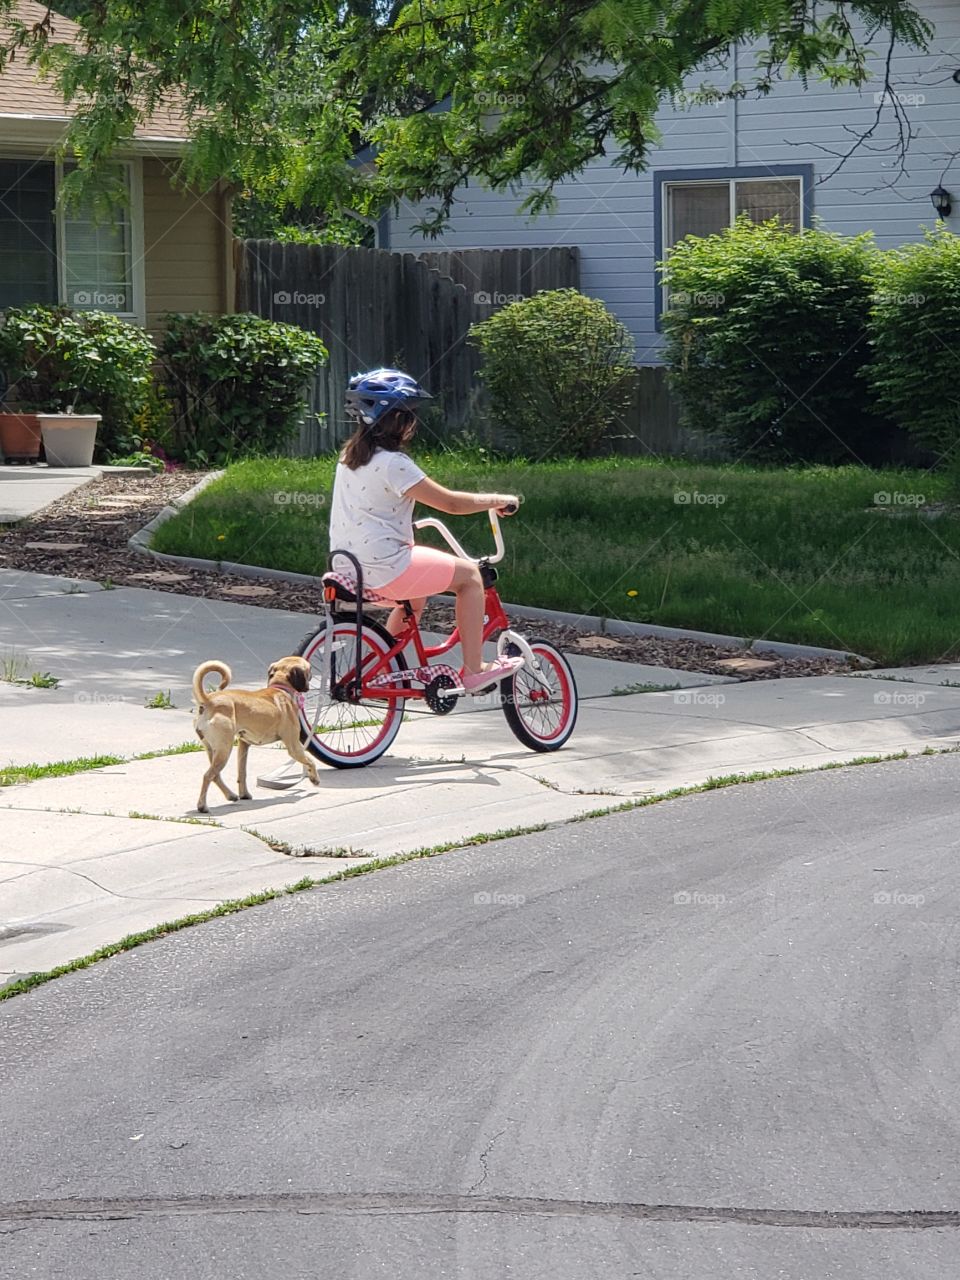 riding bike walking dog